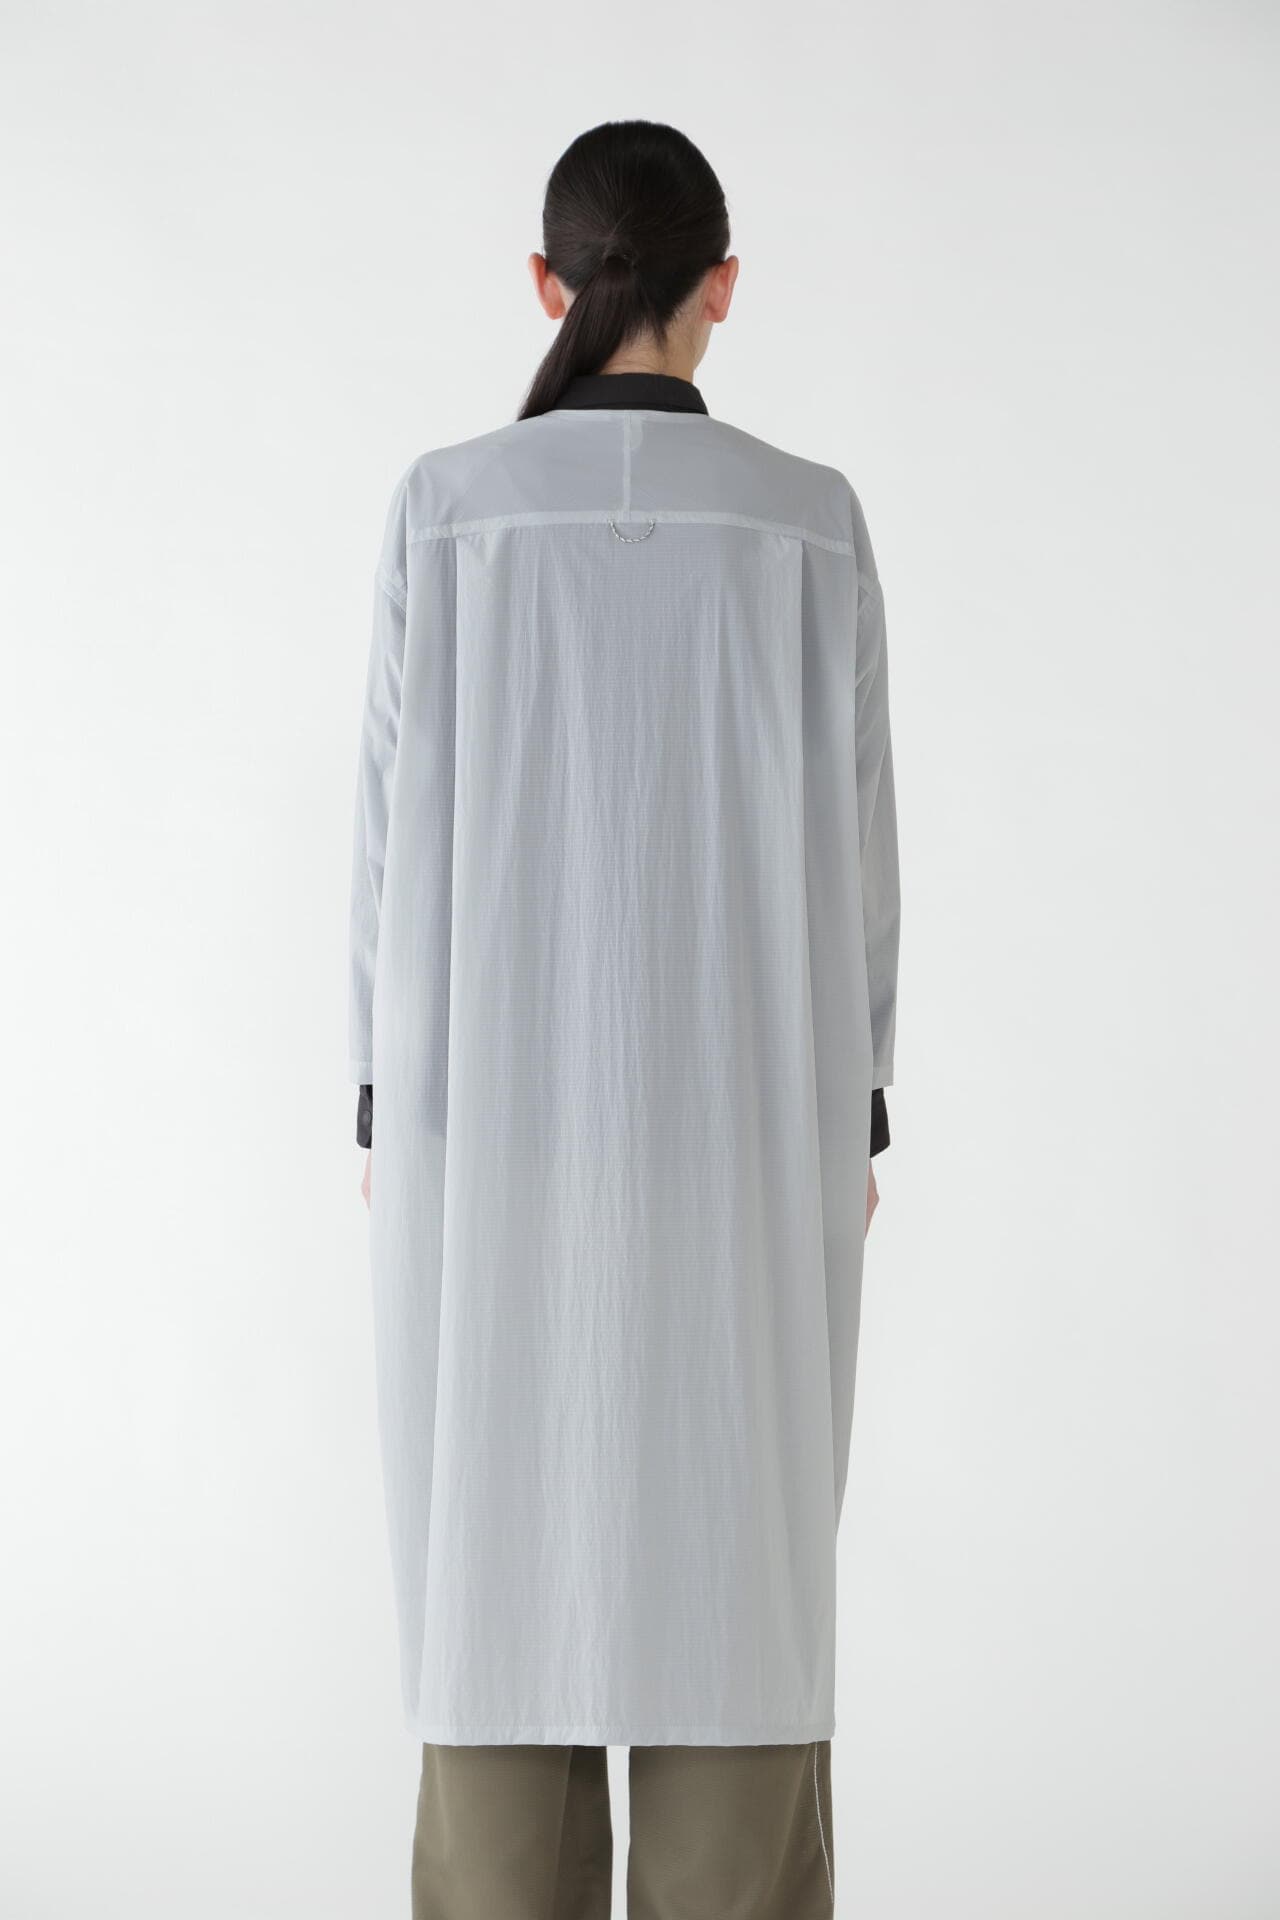 packable light dress (W)